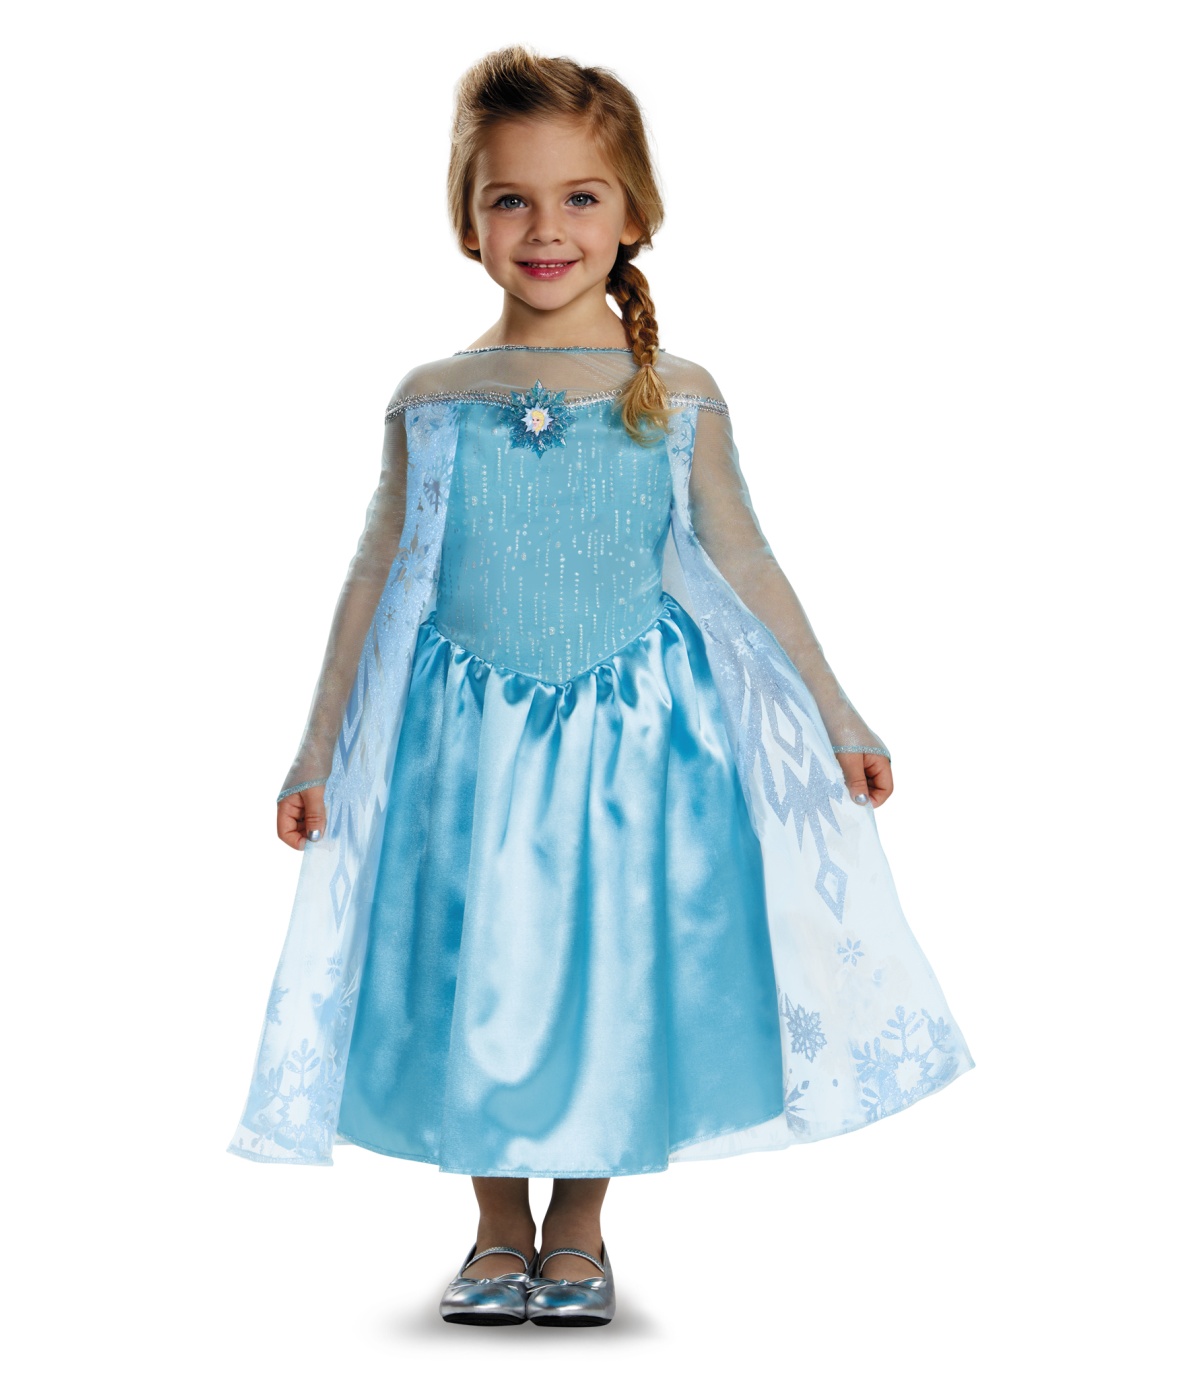 Frozen Elsa Little Girls Disney Costume Party Dress Arendale Ice Queen